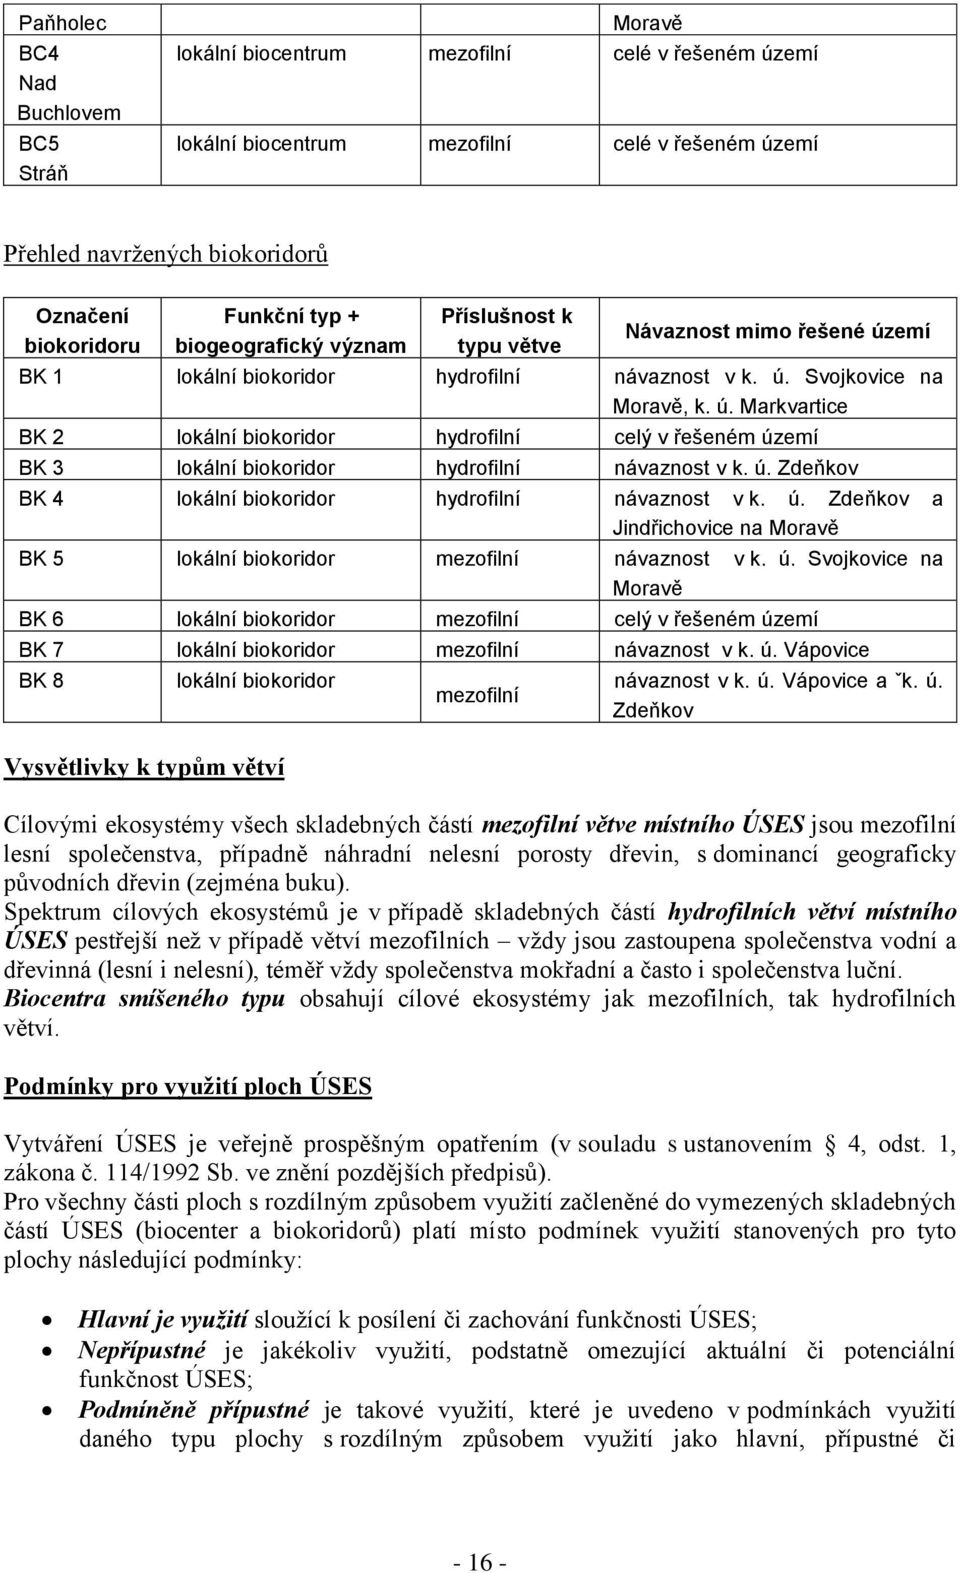 emí BK 1 lokální biokoridor hydrofilní návaznost v k. ú. Svojkovice na Moravě, k. ú. Markvartice BK 2 lokální biokoridor hydrofilní celý v řešeném území BK 3 lokální biokoridor hydrofilní návaznost v k.